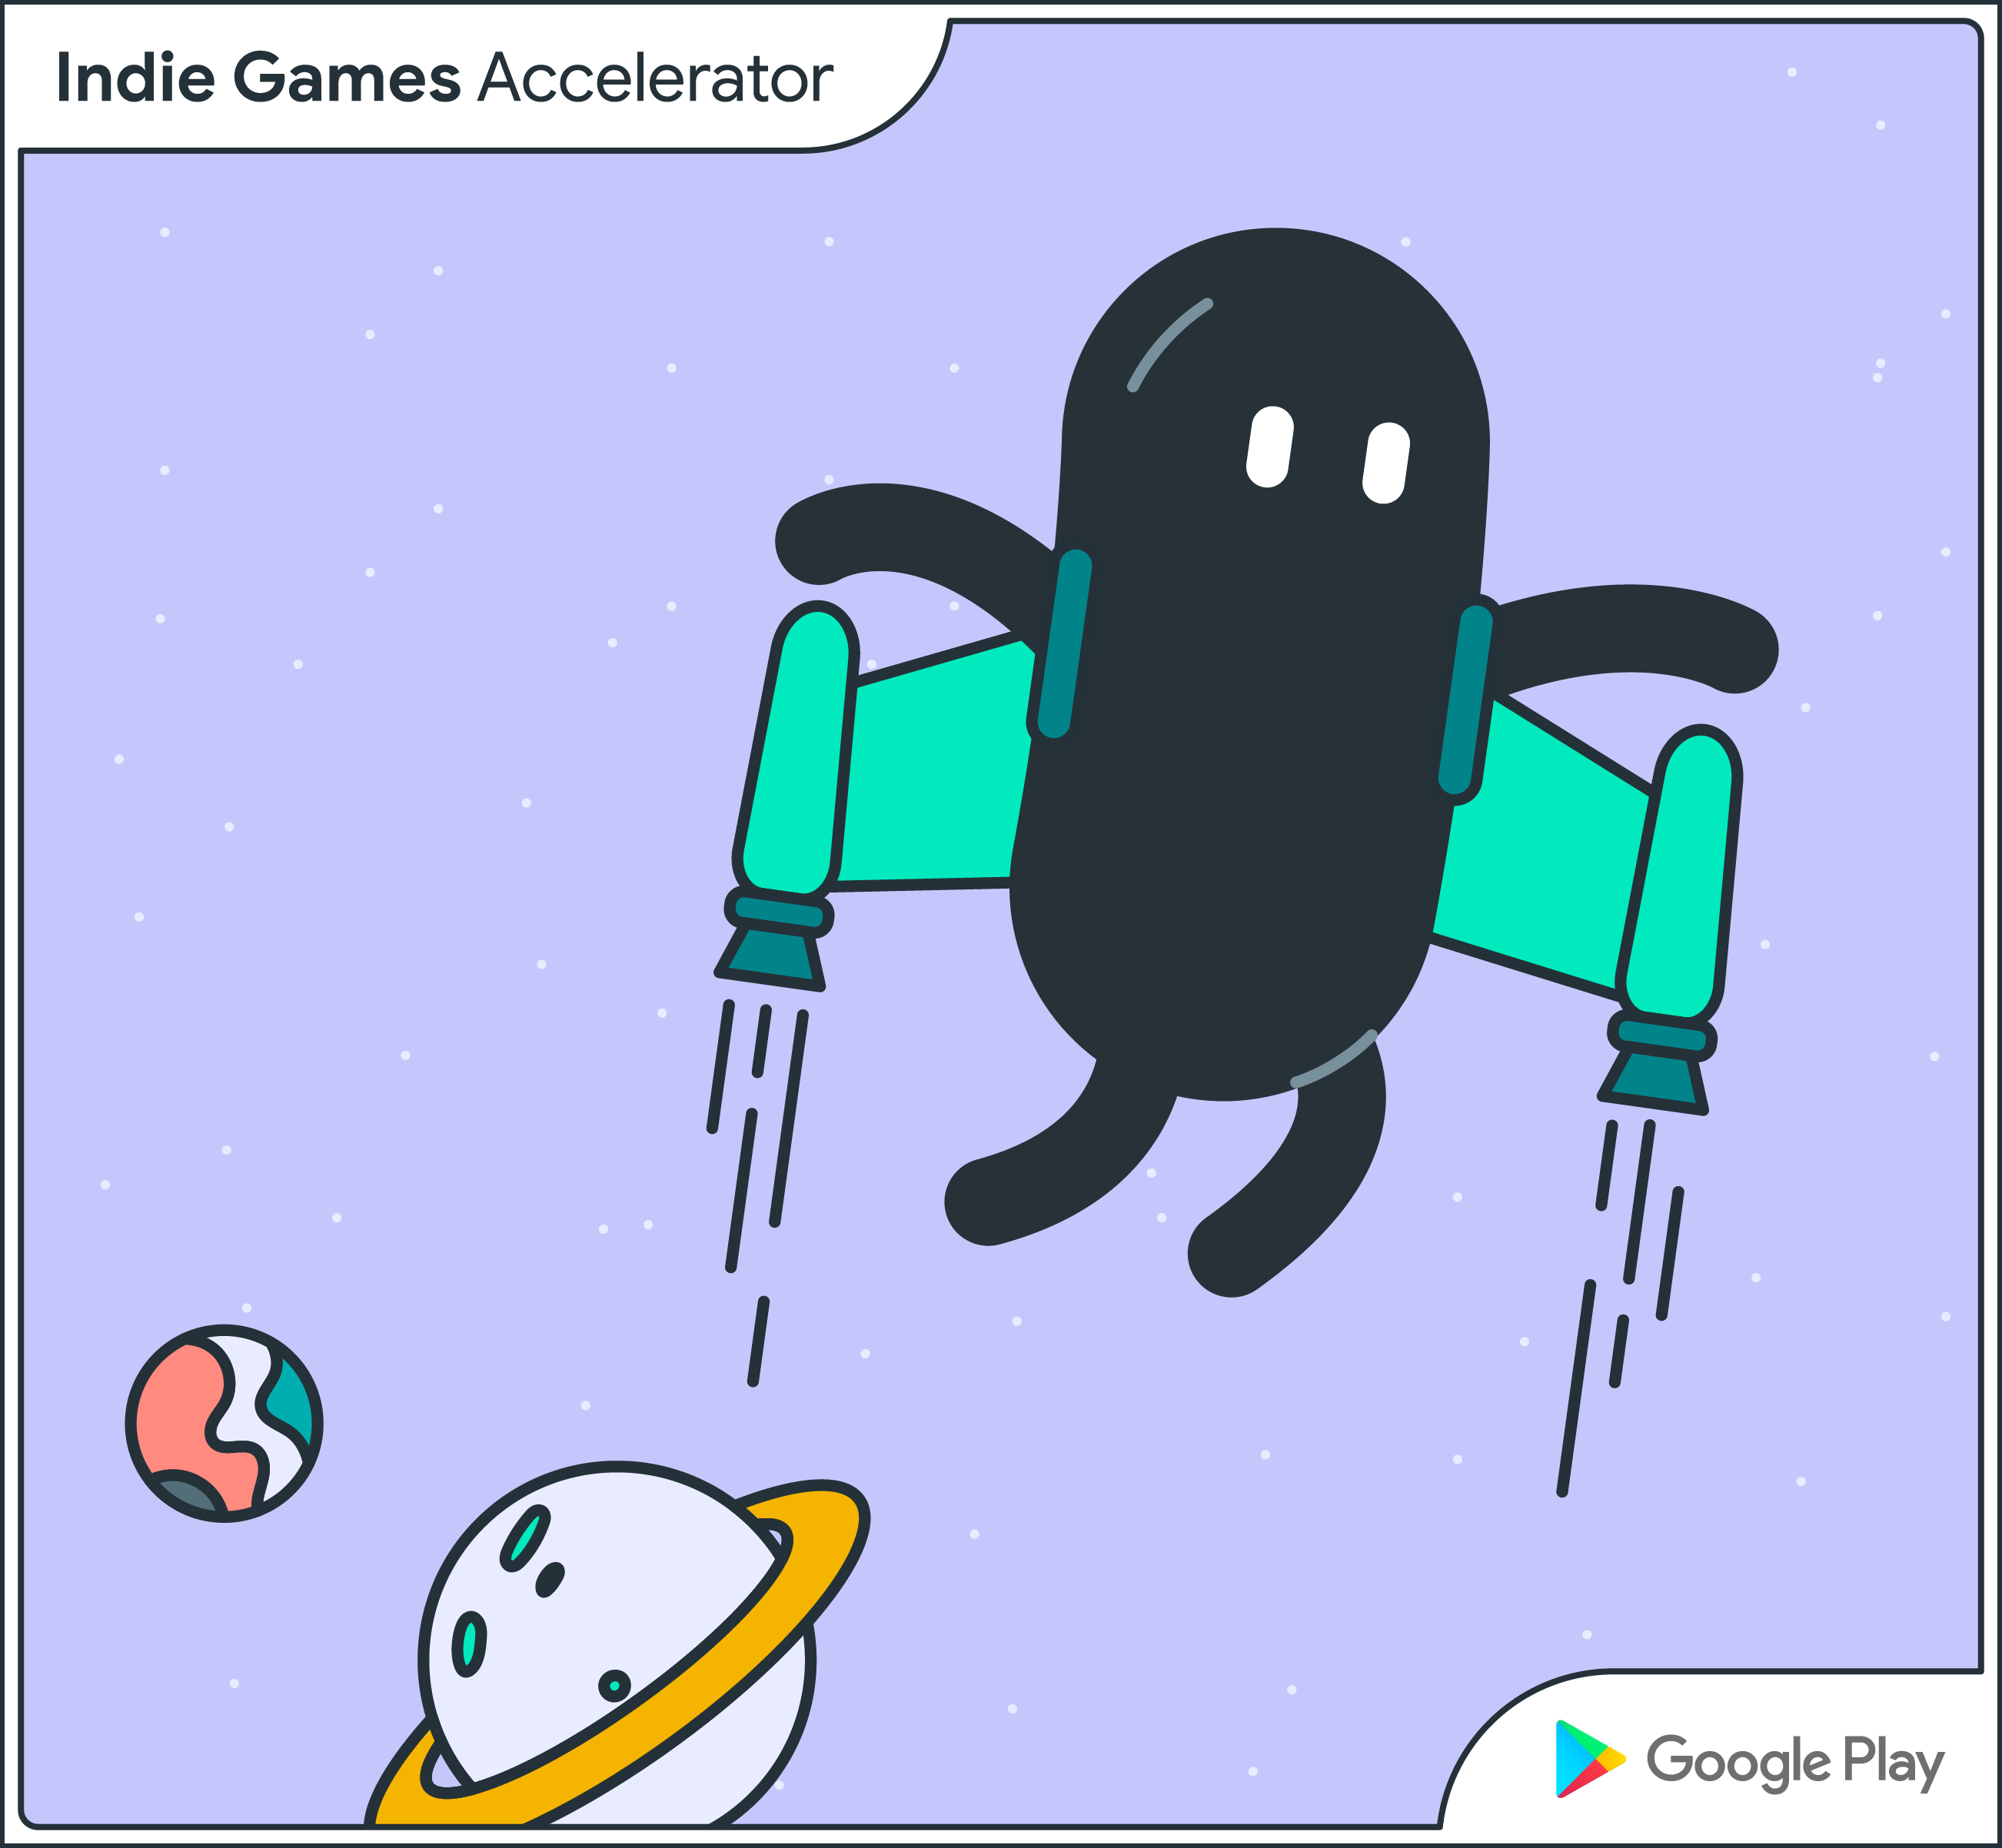 Programa de mentoria do Google Play para desenvolvedores de jogos indie  está com inscrições abertas